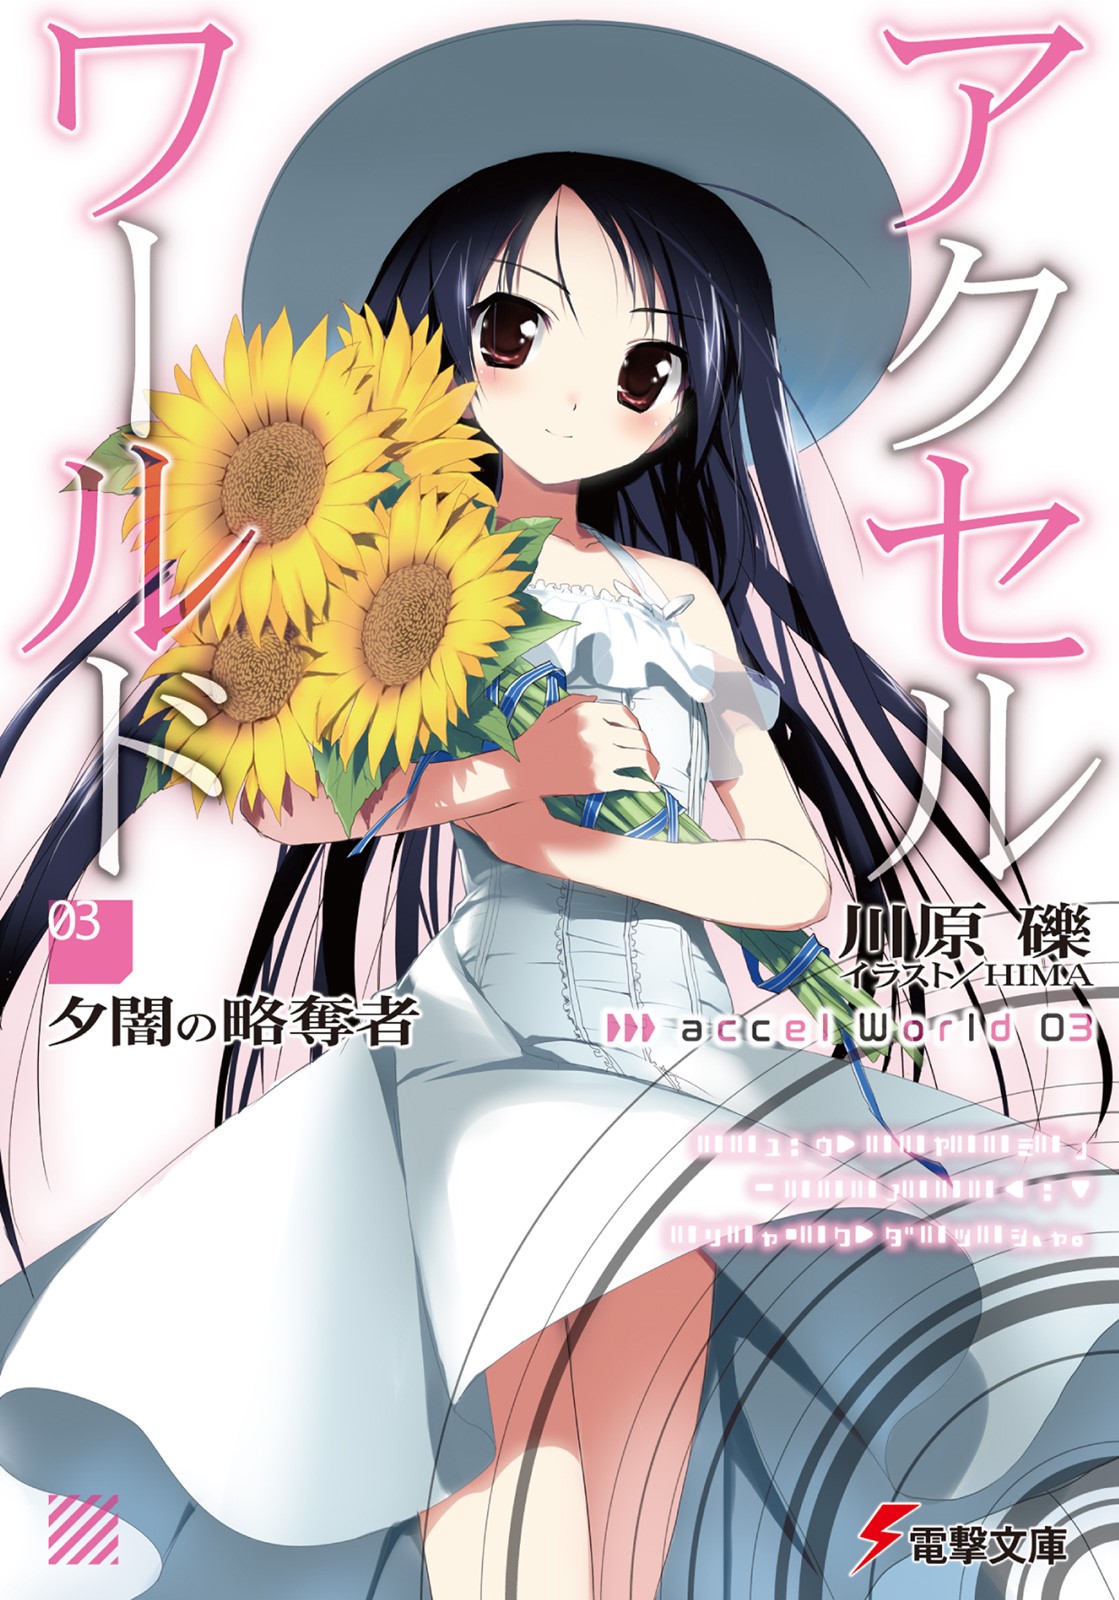 Ilustrasi Light Novel Accel World - Volume 03